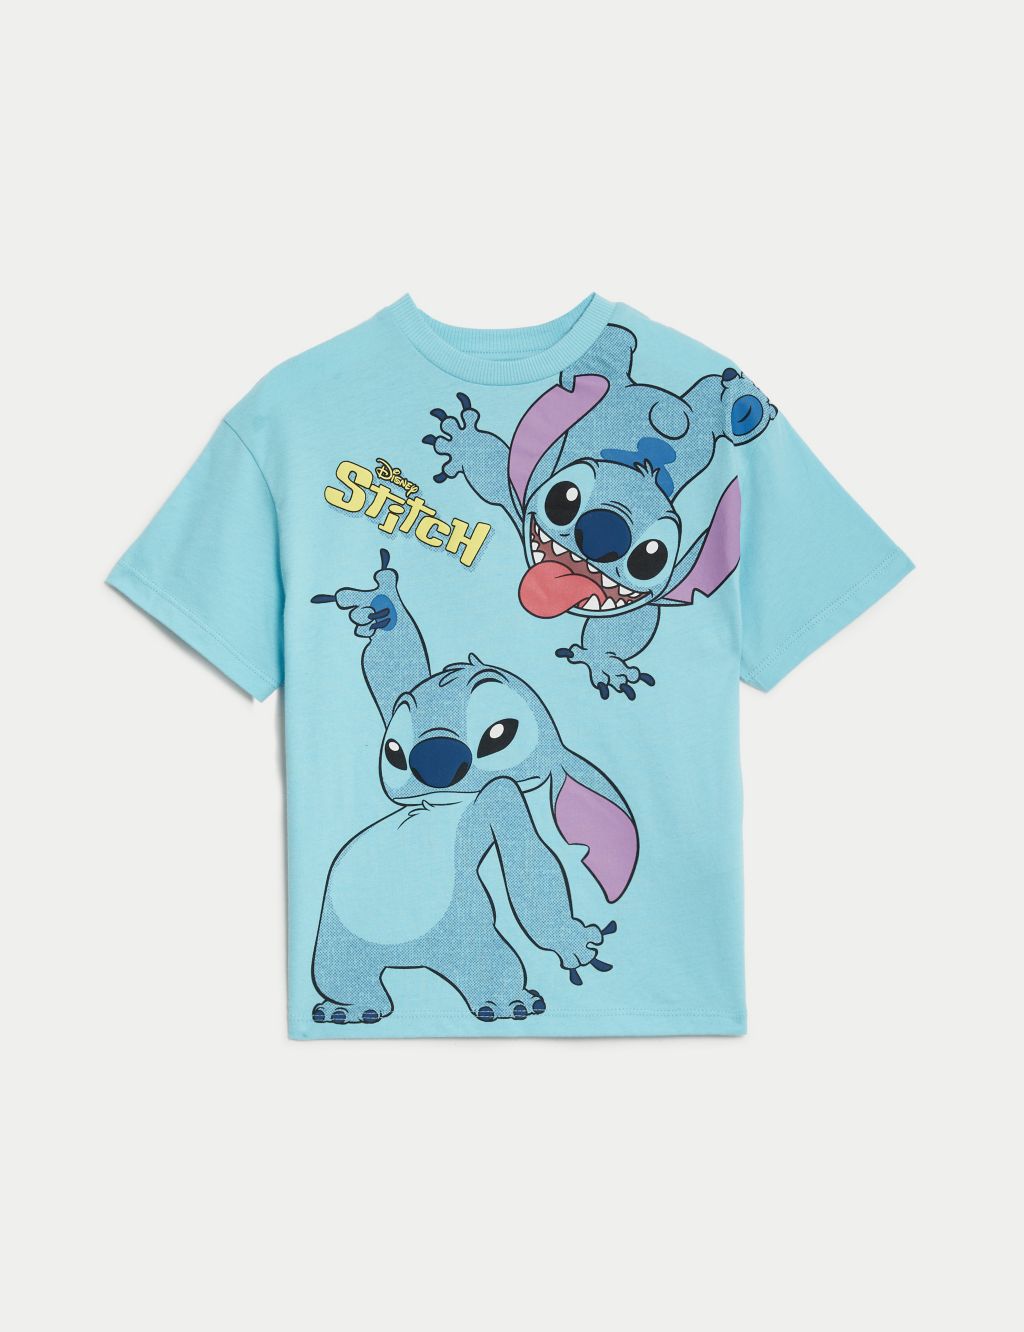 Pure Cotton Lilo & Stitch™ T-Shirt (2-8 Yrs)